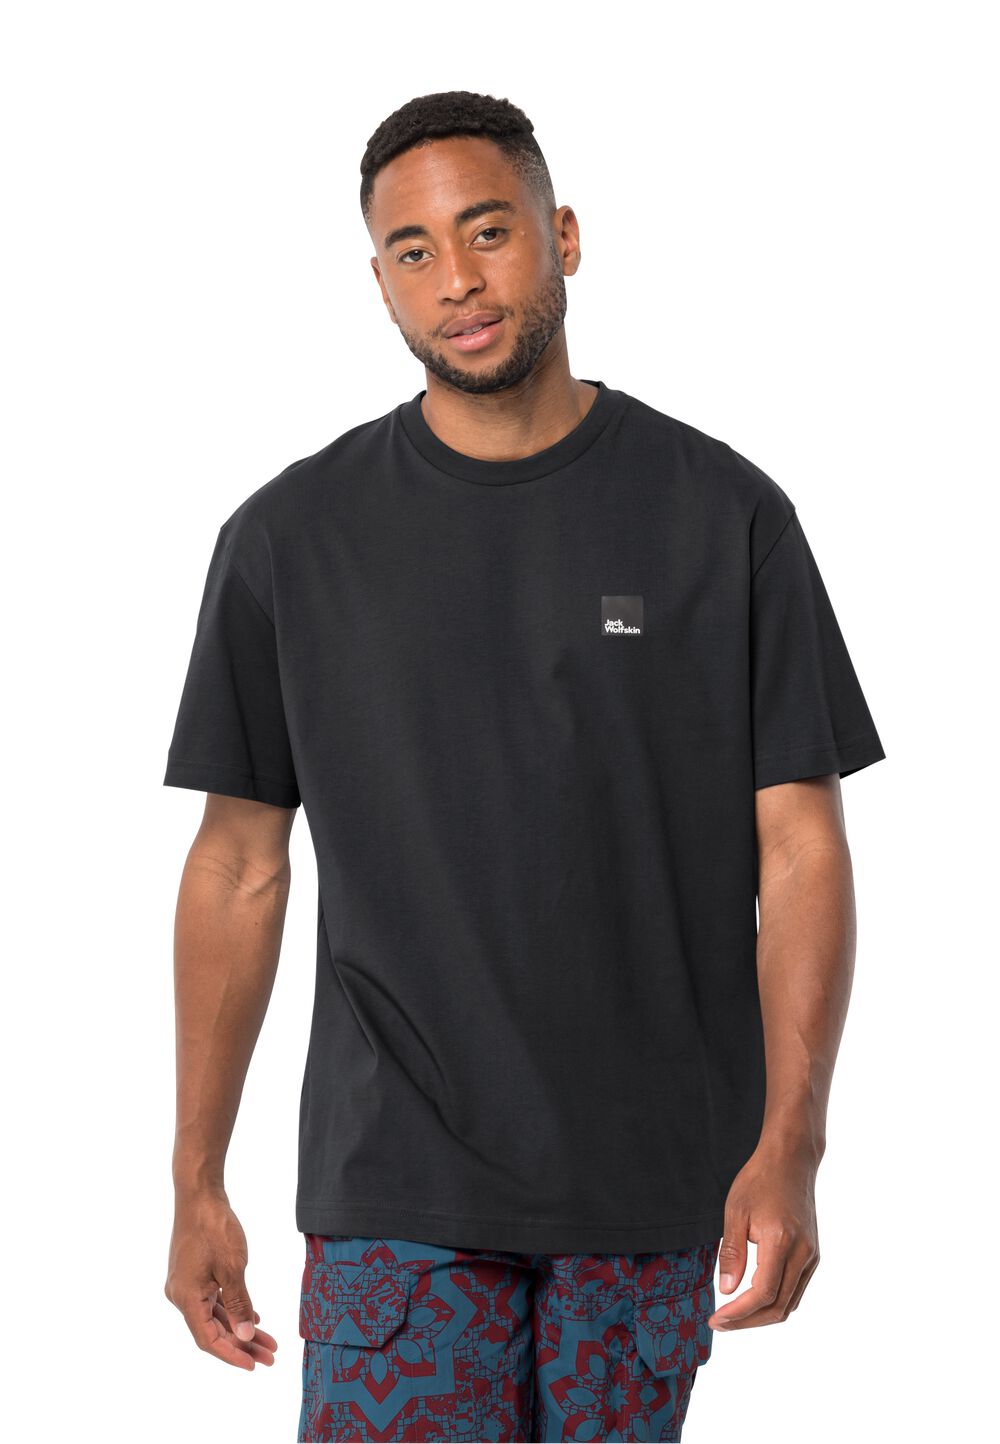 Jack Wolfskin Unisex T-shirt aus Bio-Baumwolle Eschenheimer T-Shirt M schwarz granite black von Jack Wolfskin